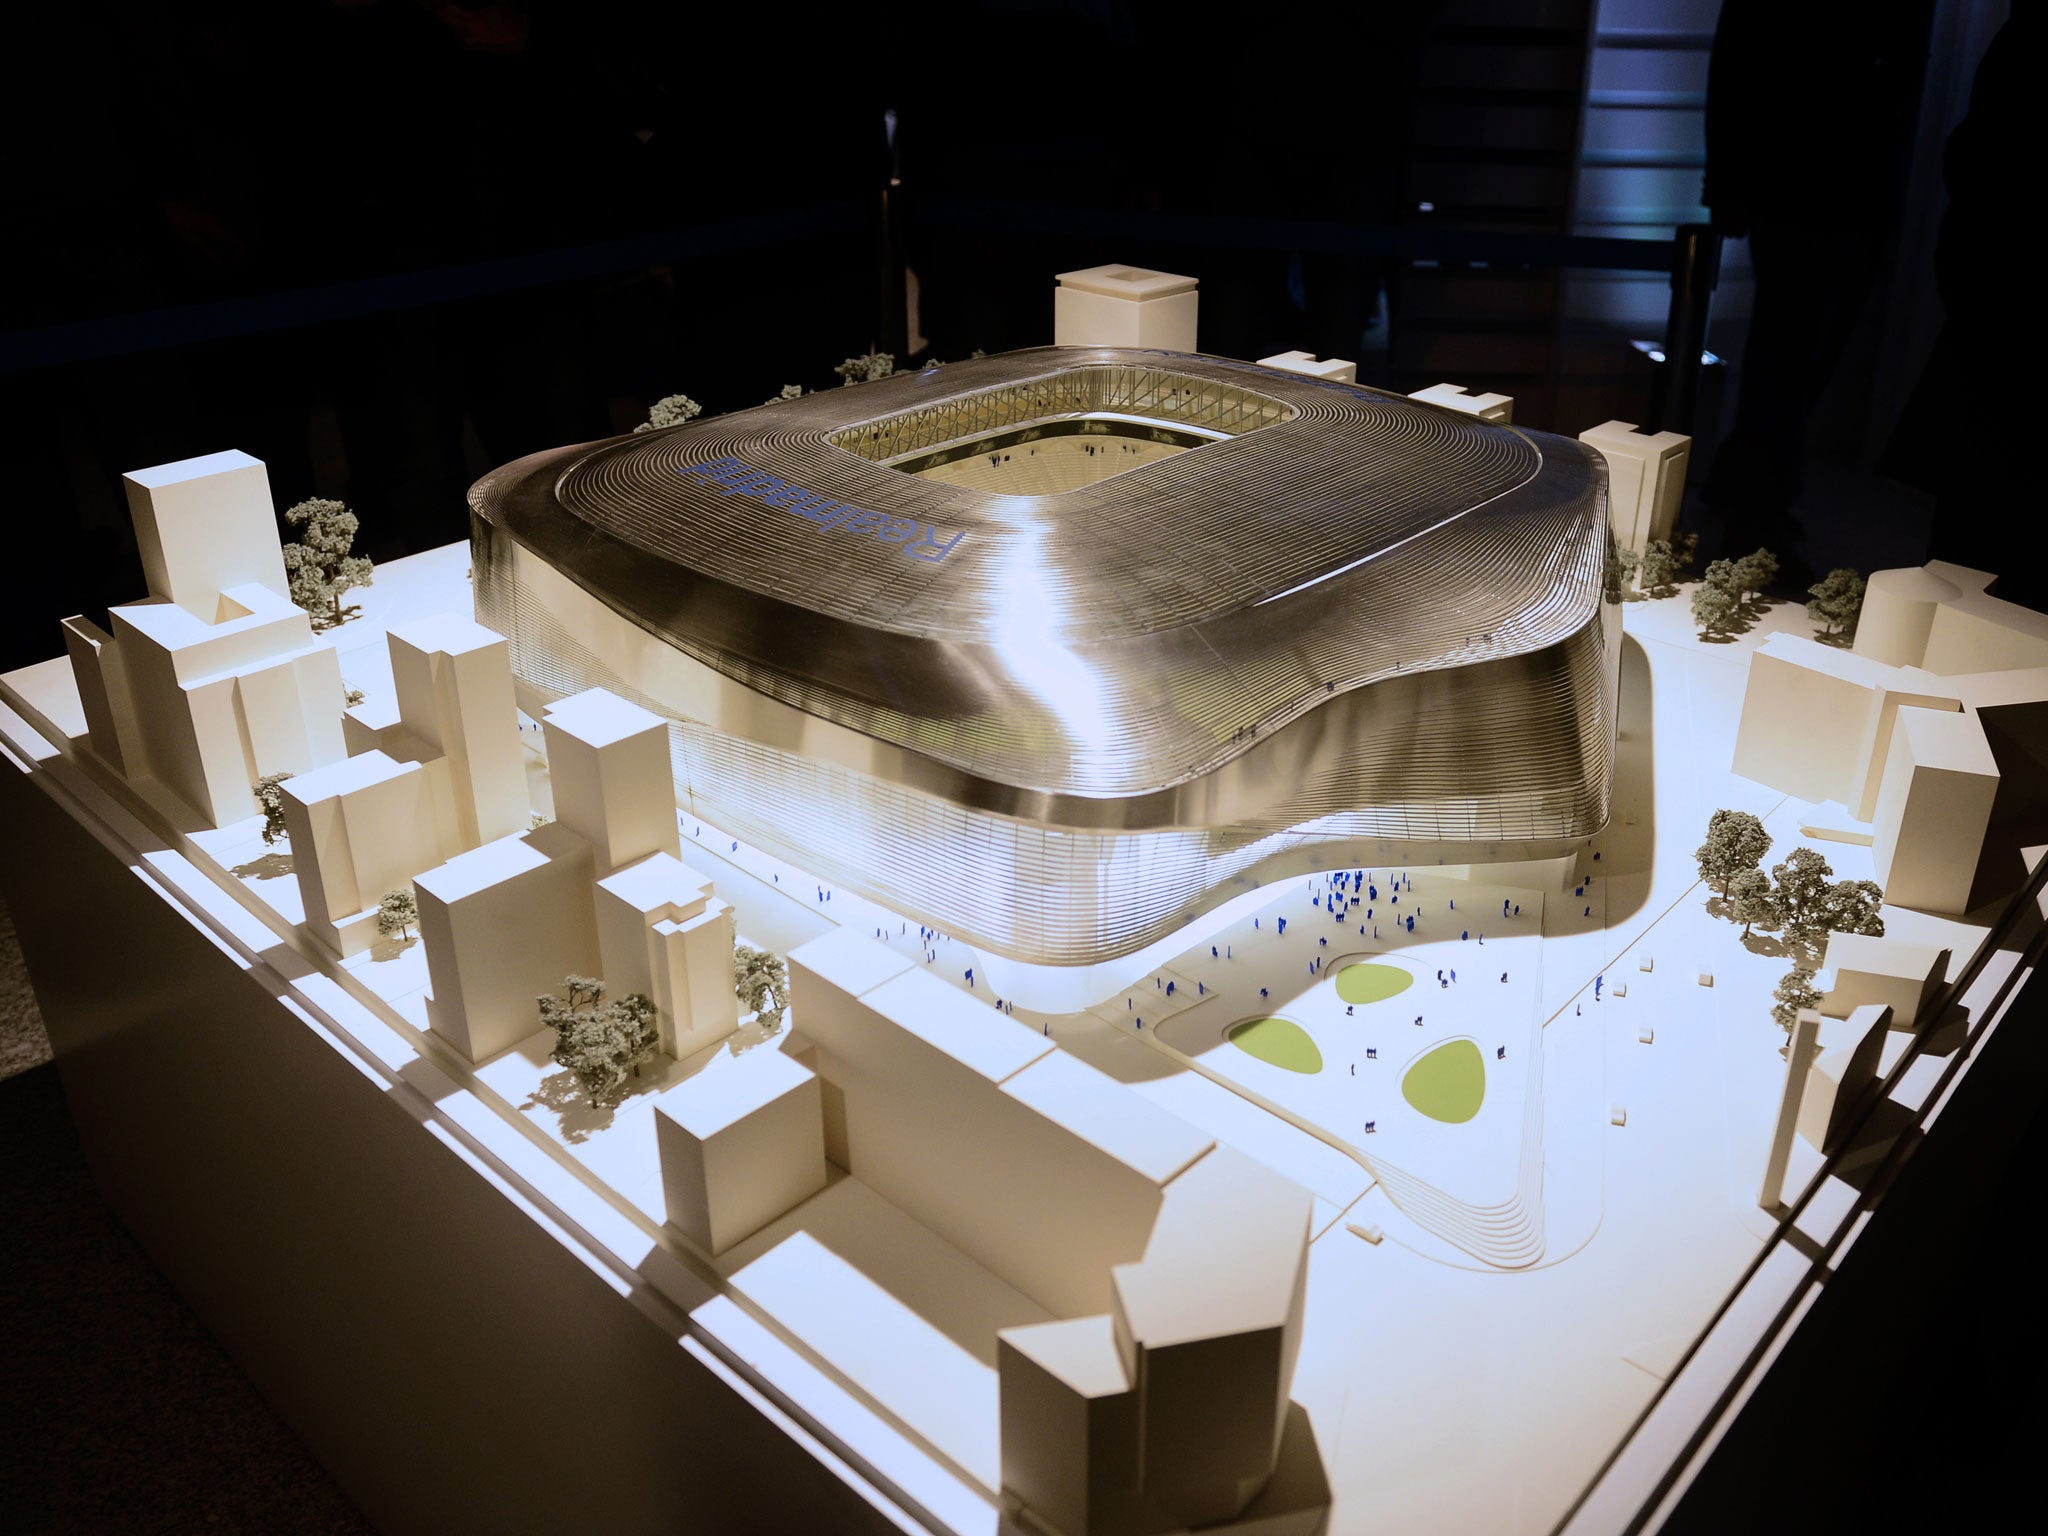 Kế hoạch đổi mới sân vận động Bernabeu của Real Madrid là một dự án đầy tham vọng và mang tính biểu tượng cho sự phát triển của câu lạc bộ. Đừng bỏ lỡ cơ hội để tham gia vào hành trình này, để cùng Real Madrid khát khao chinh phục những thành công mới.